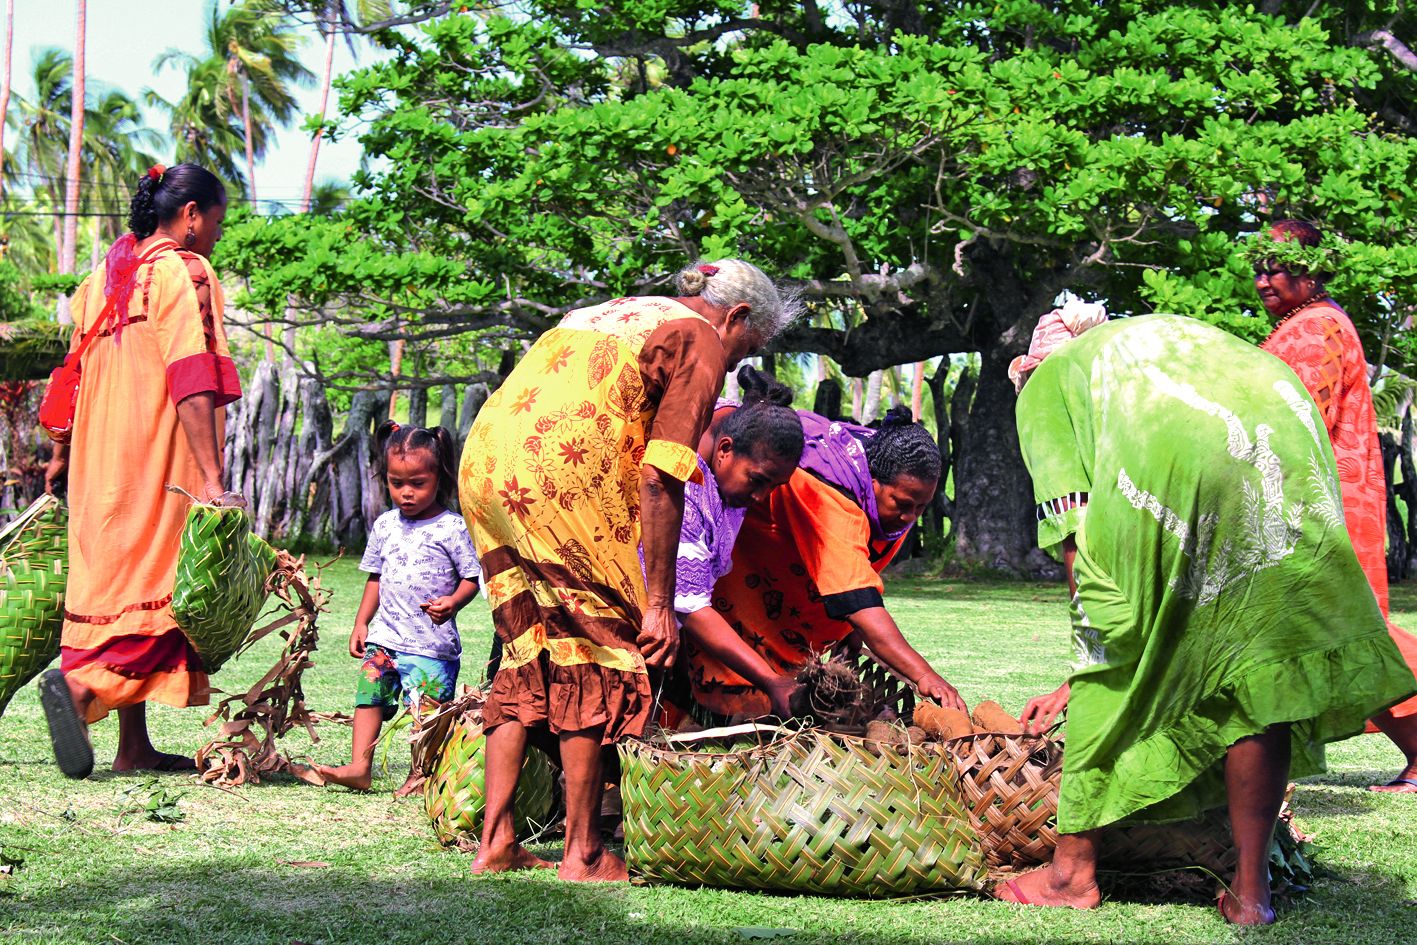 Les paniers pour le transport des ignames ont été fabriqués avec des feuilles de cocotiers. Les femmes vont ensuite cuire les ignames, pendant que les hommes s’occupent de préparer du poisson.